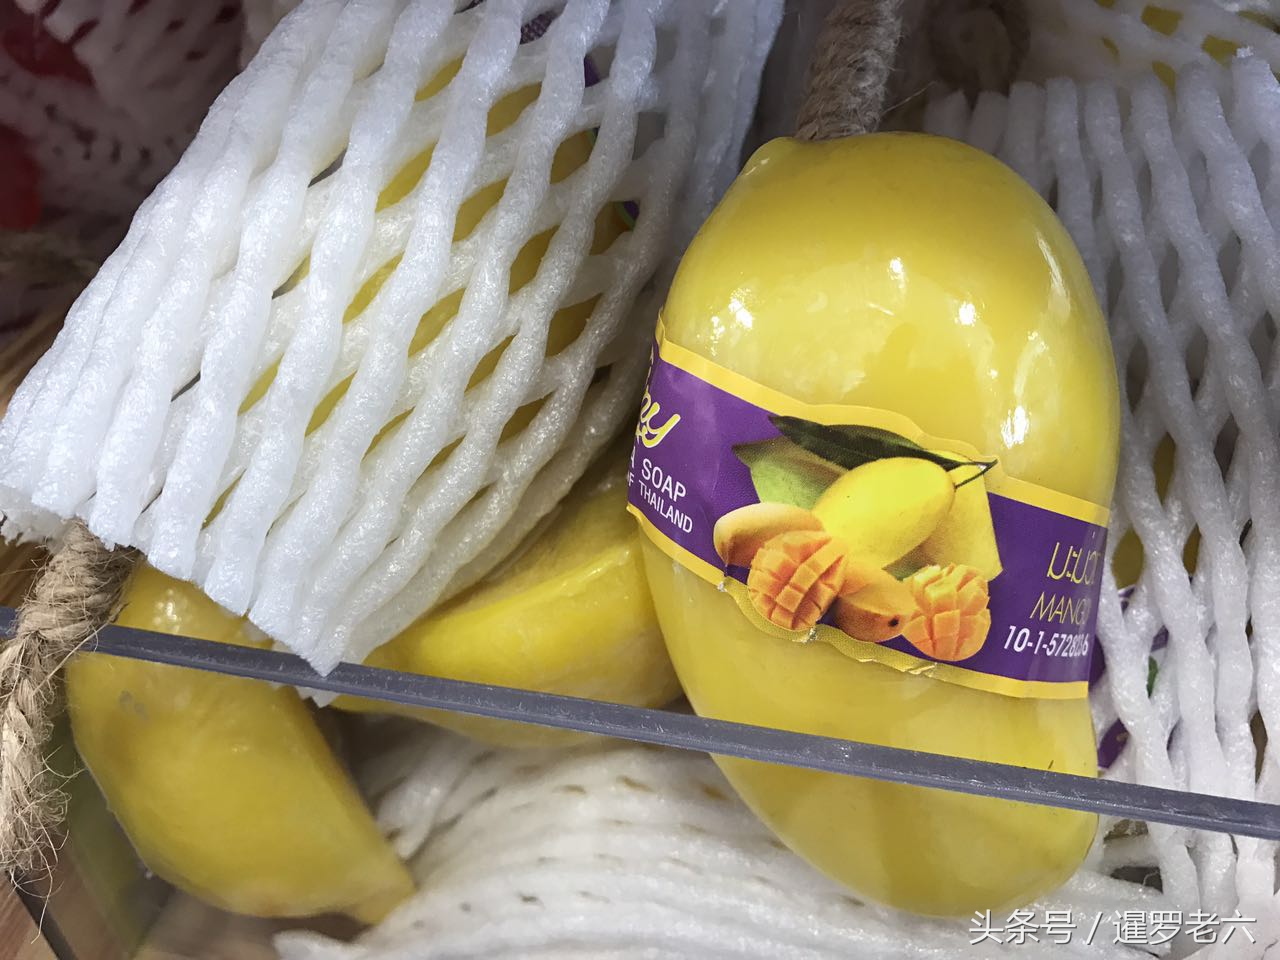 来看看泰国的“水果香皂”，造型可爱，气味挺香，效果咋样呢？